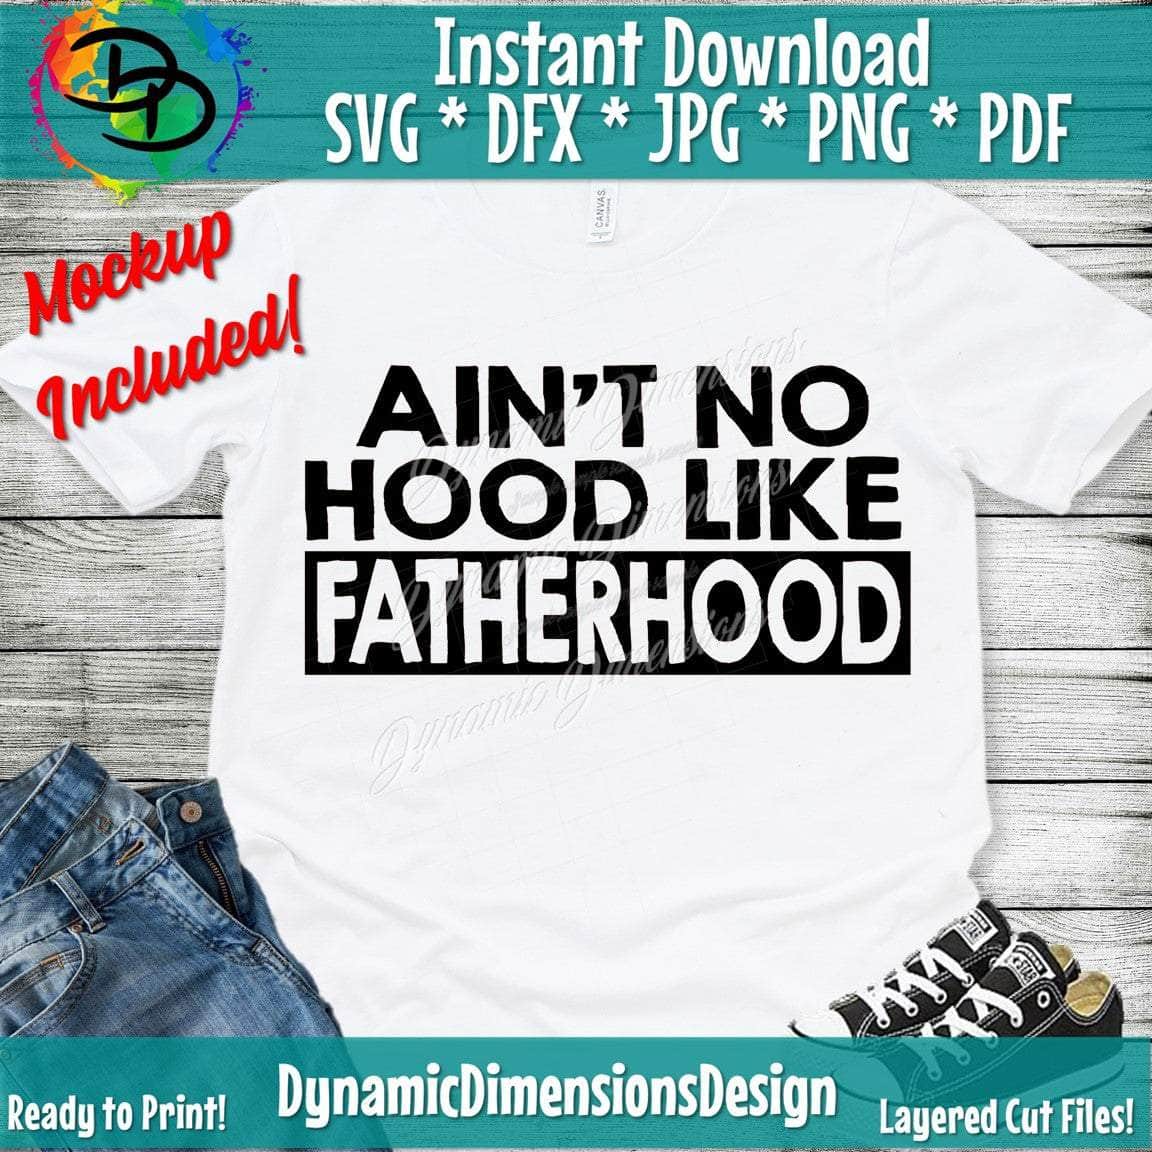 Ain't no hood like Fatherhood